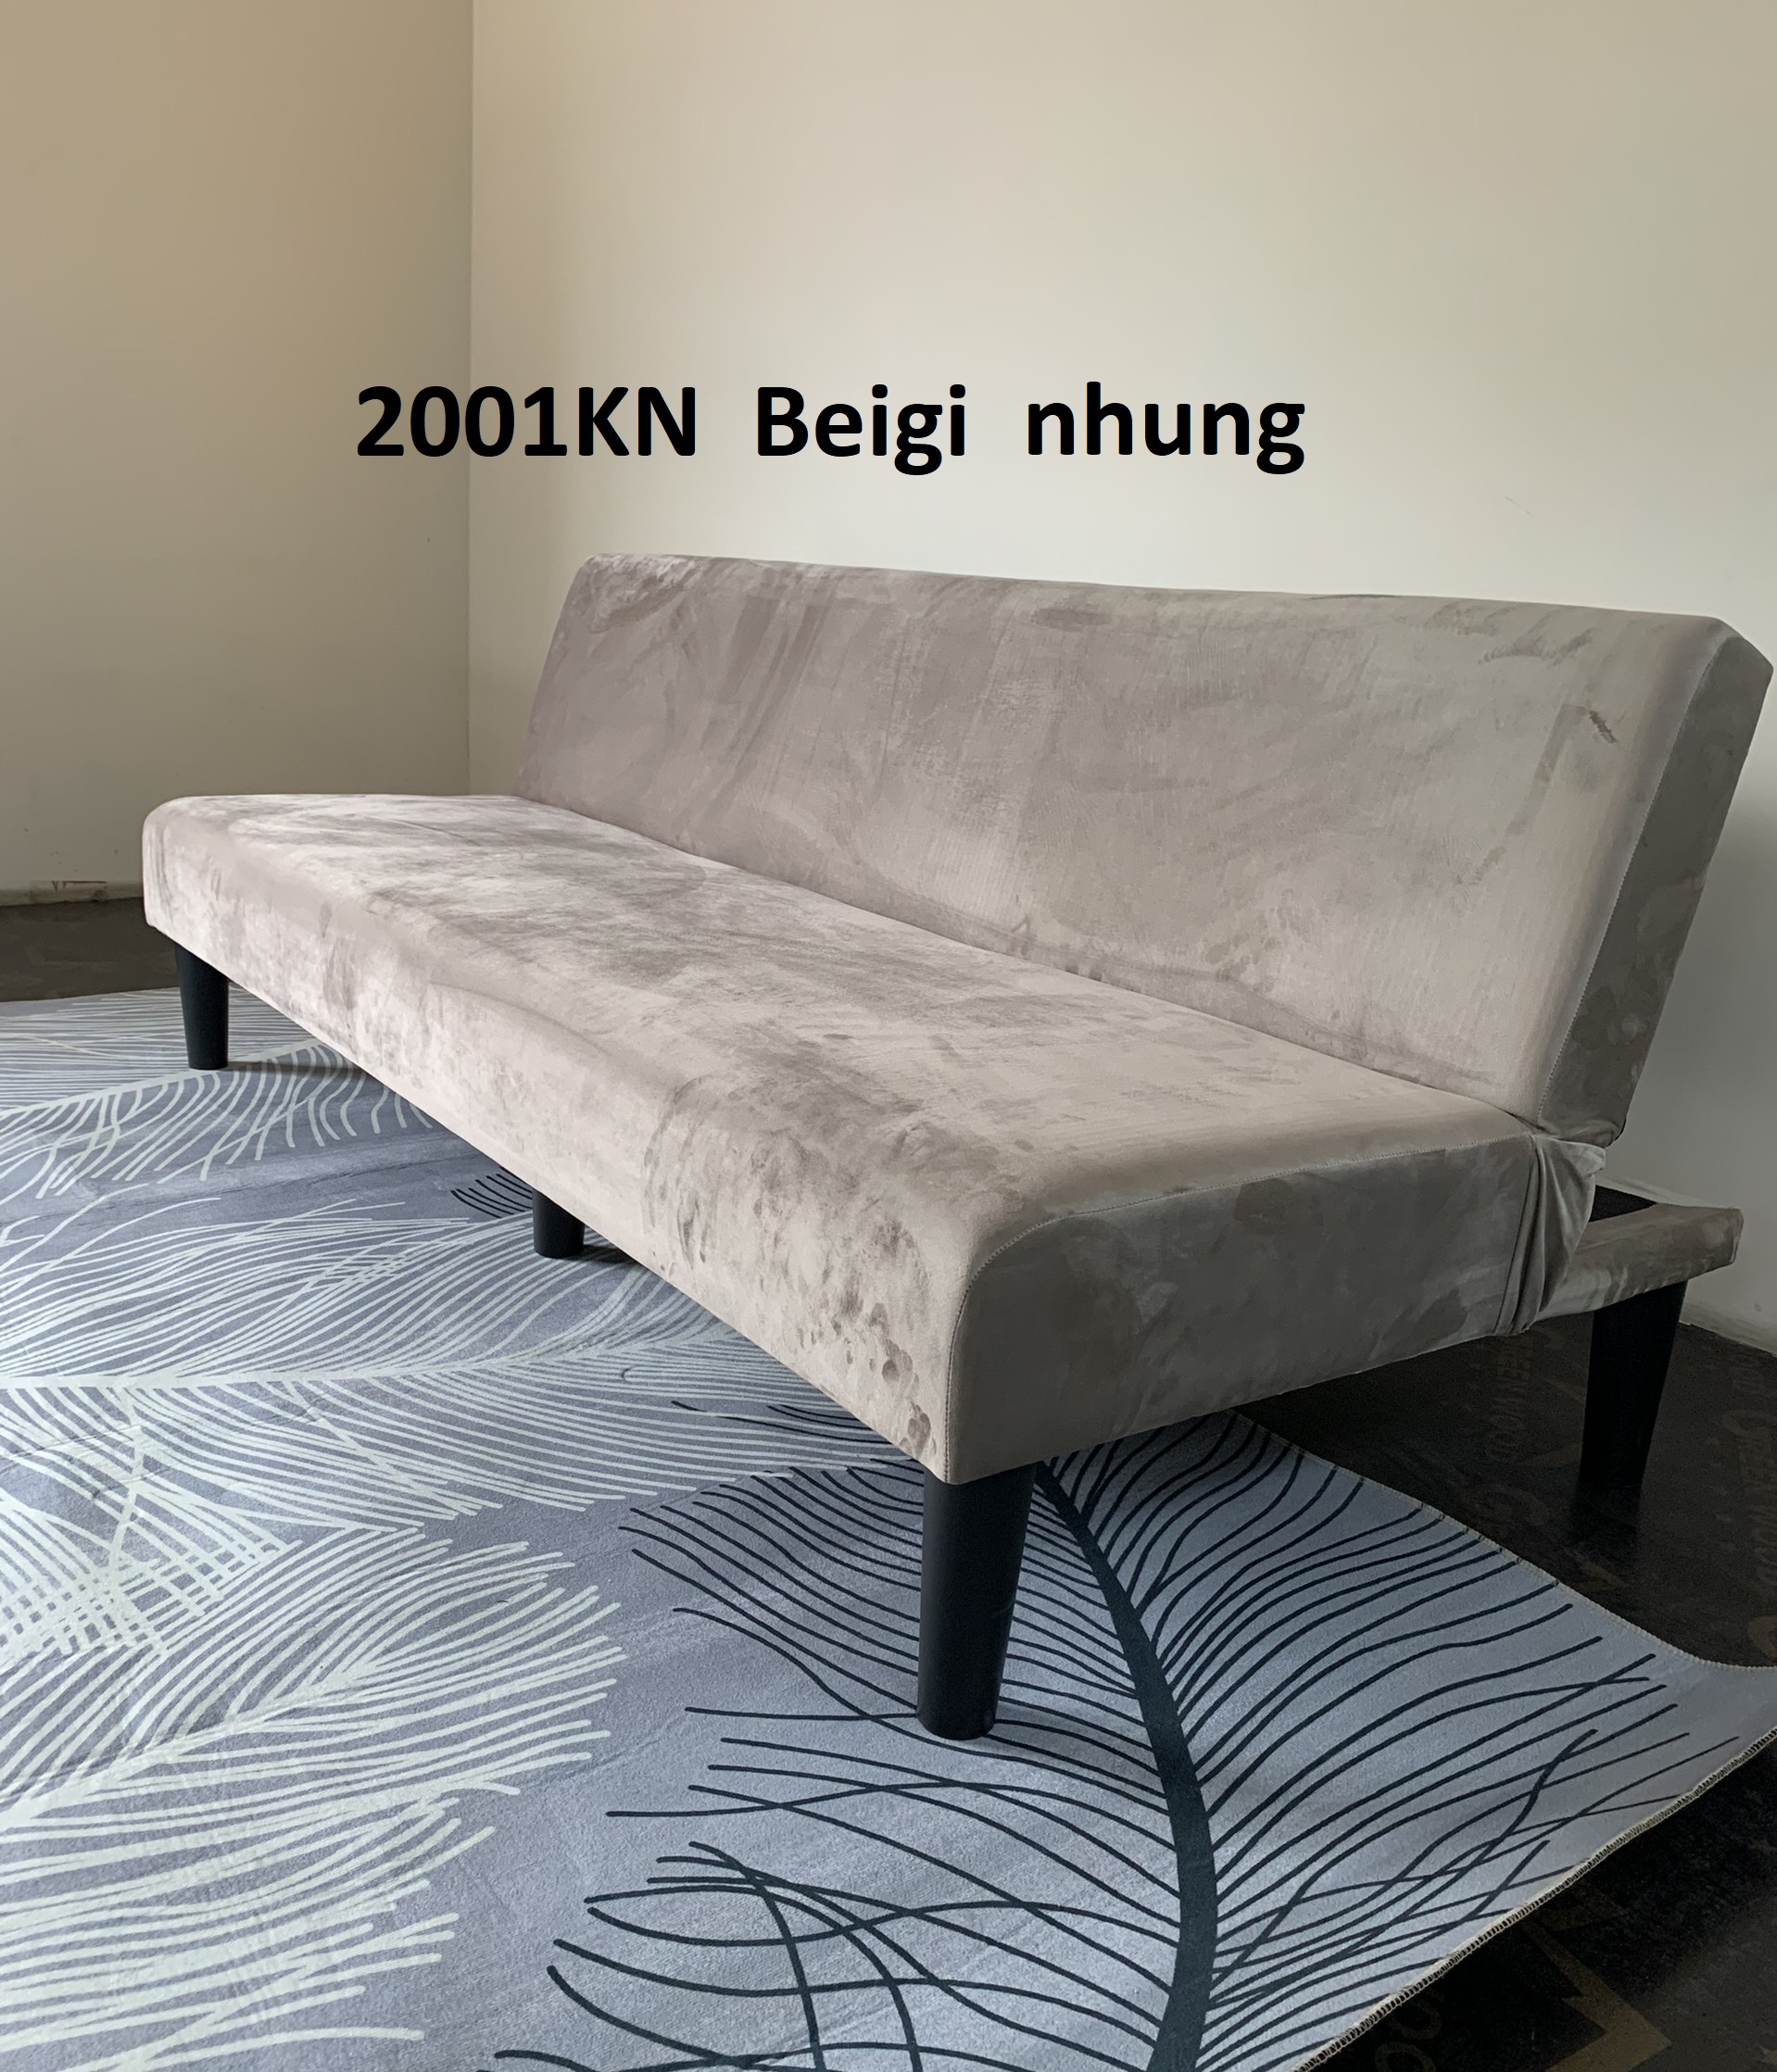 Ghế sofa giường BNS2001KN đa năng Vải nhung